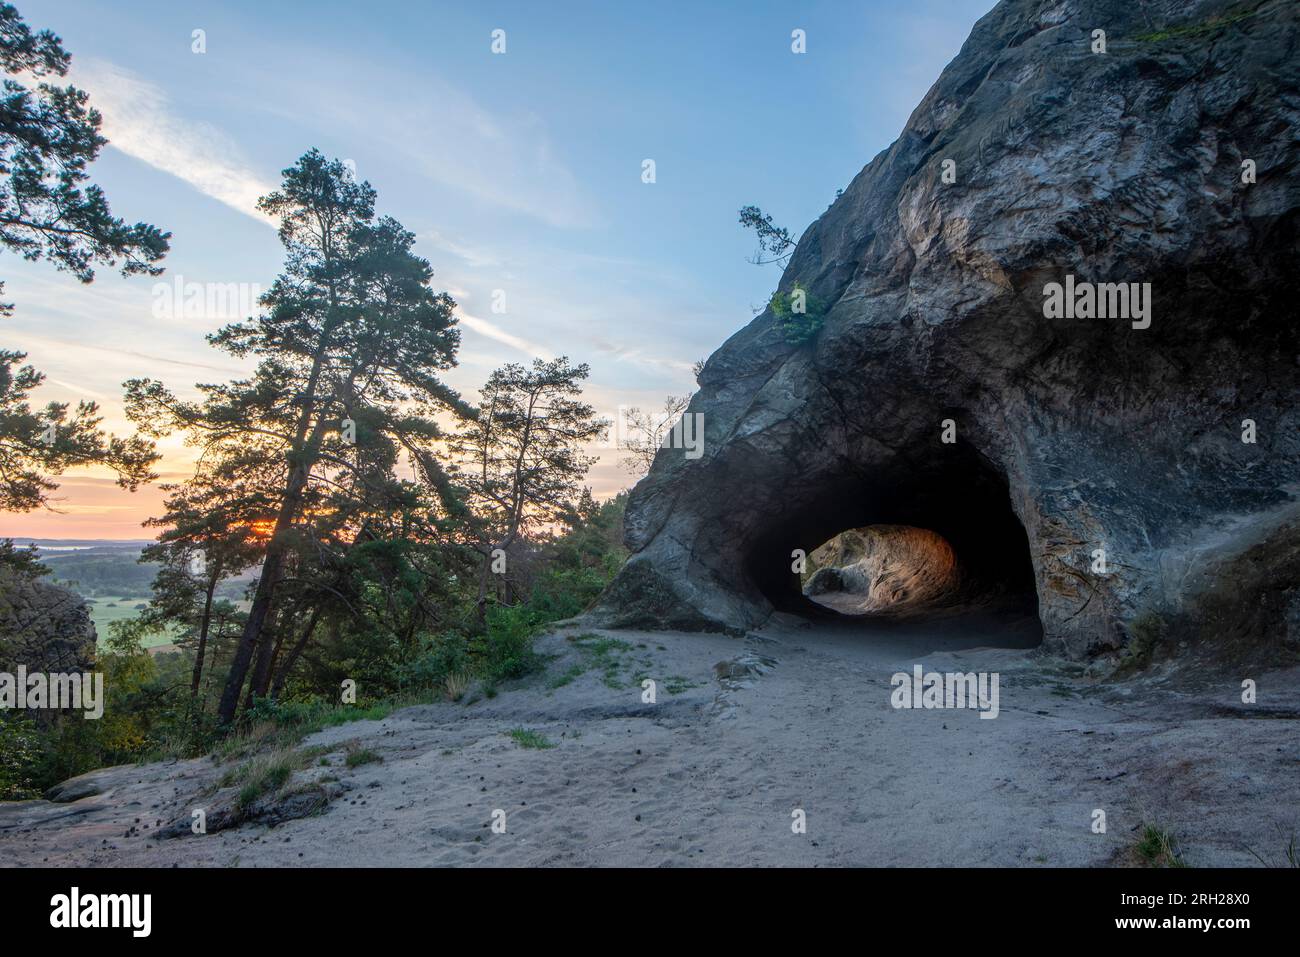 Le soleil se lève derrière une grotte aux armoiries de Hambourg. La formation de grès appartient au mur du Diable dans les montagnes du Harz. Banque D'Images